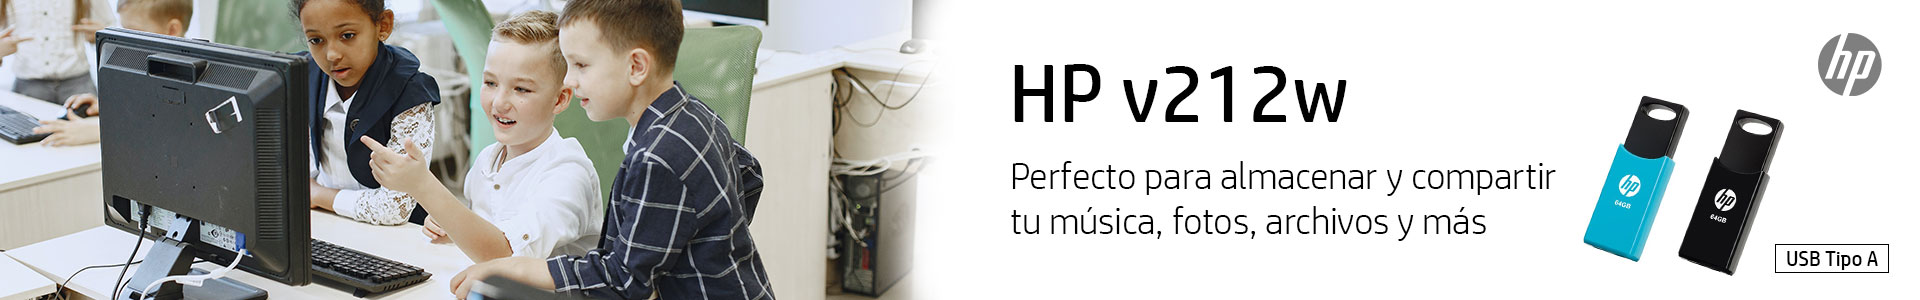 HP v122w perfecto para almacenar y compartir archivos